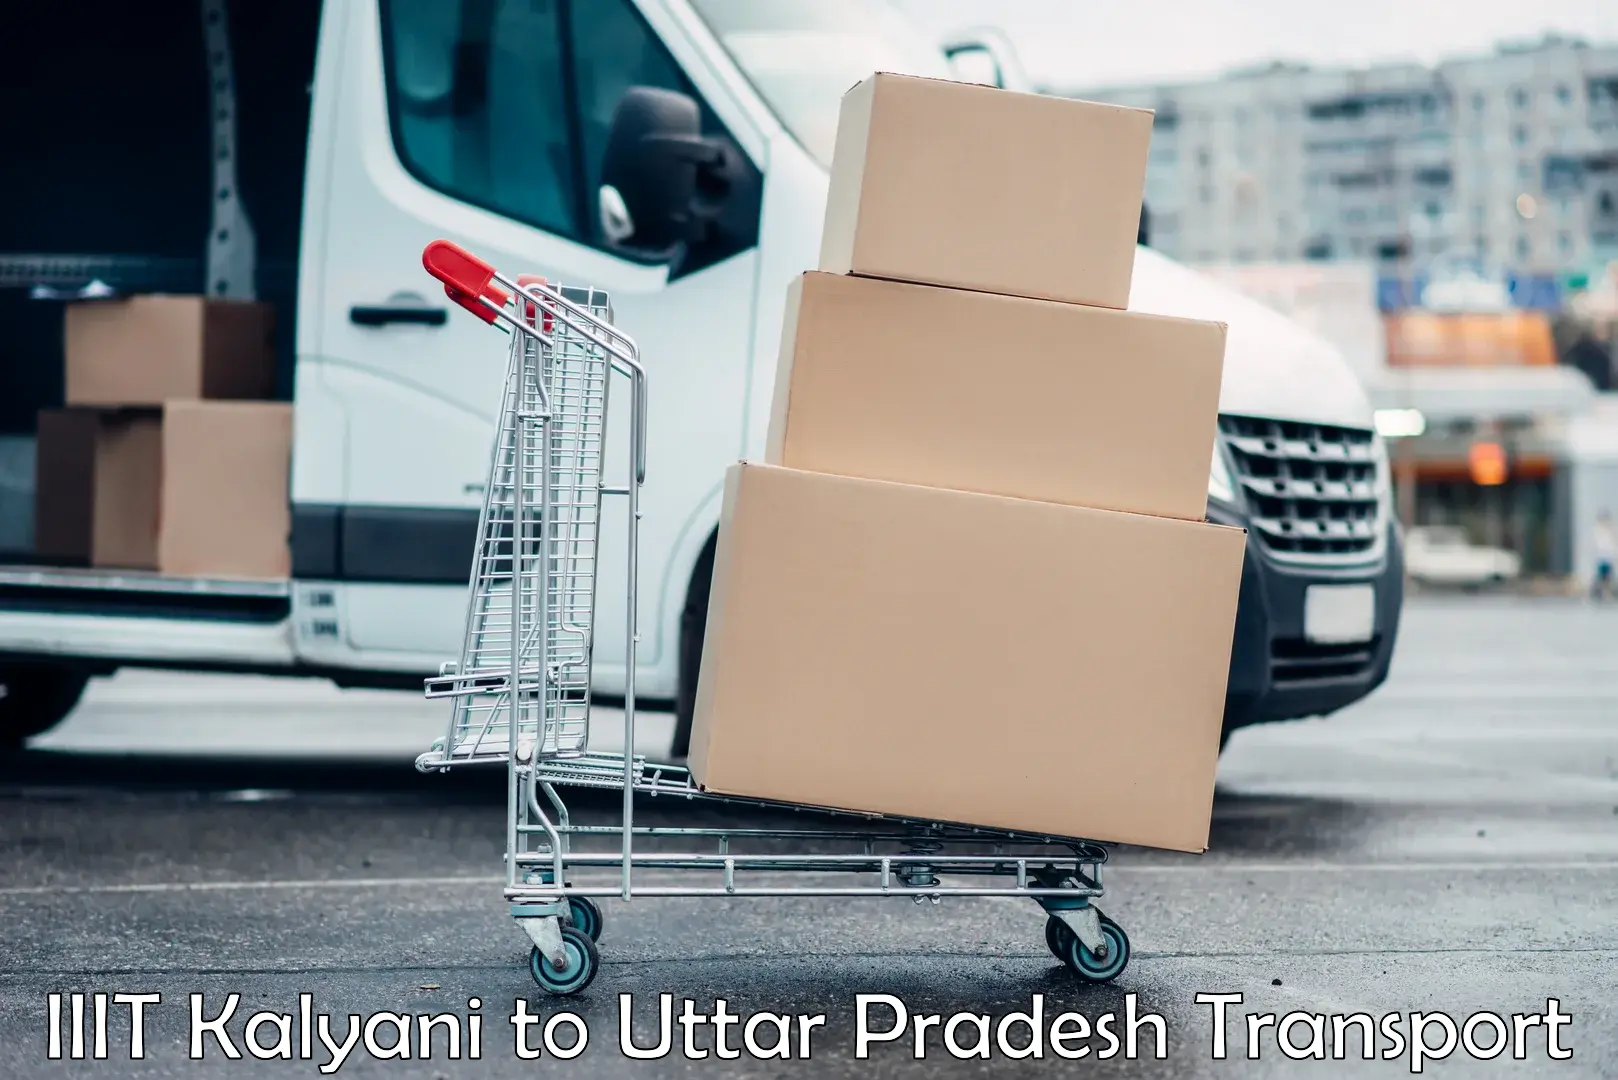 Delivery service IIIT Kalyani to Noida